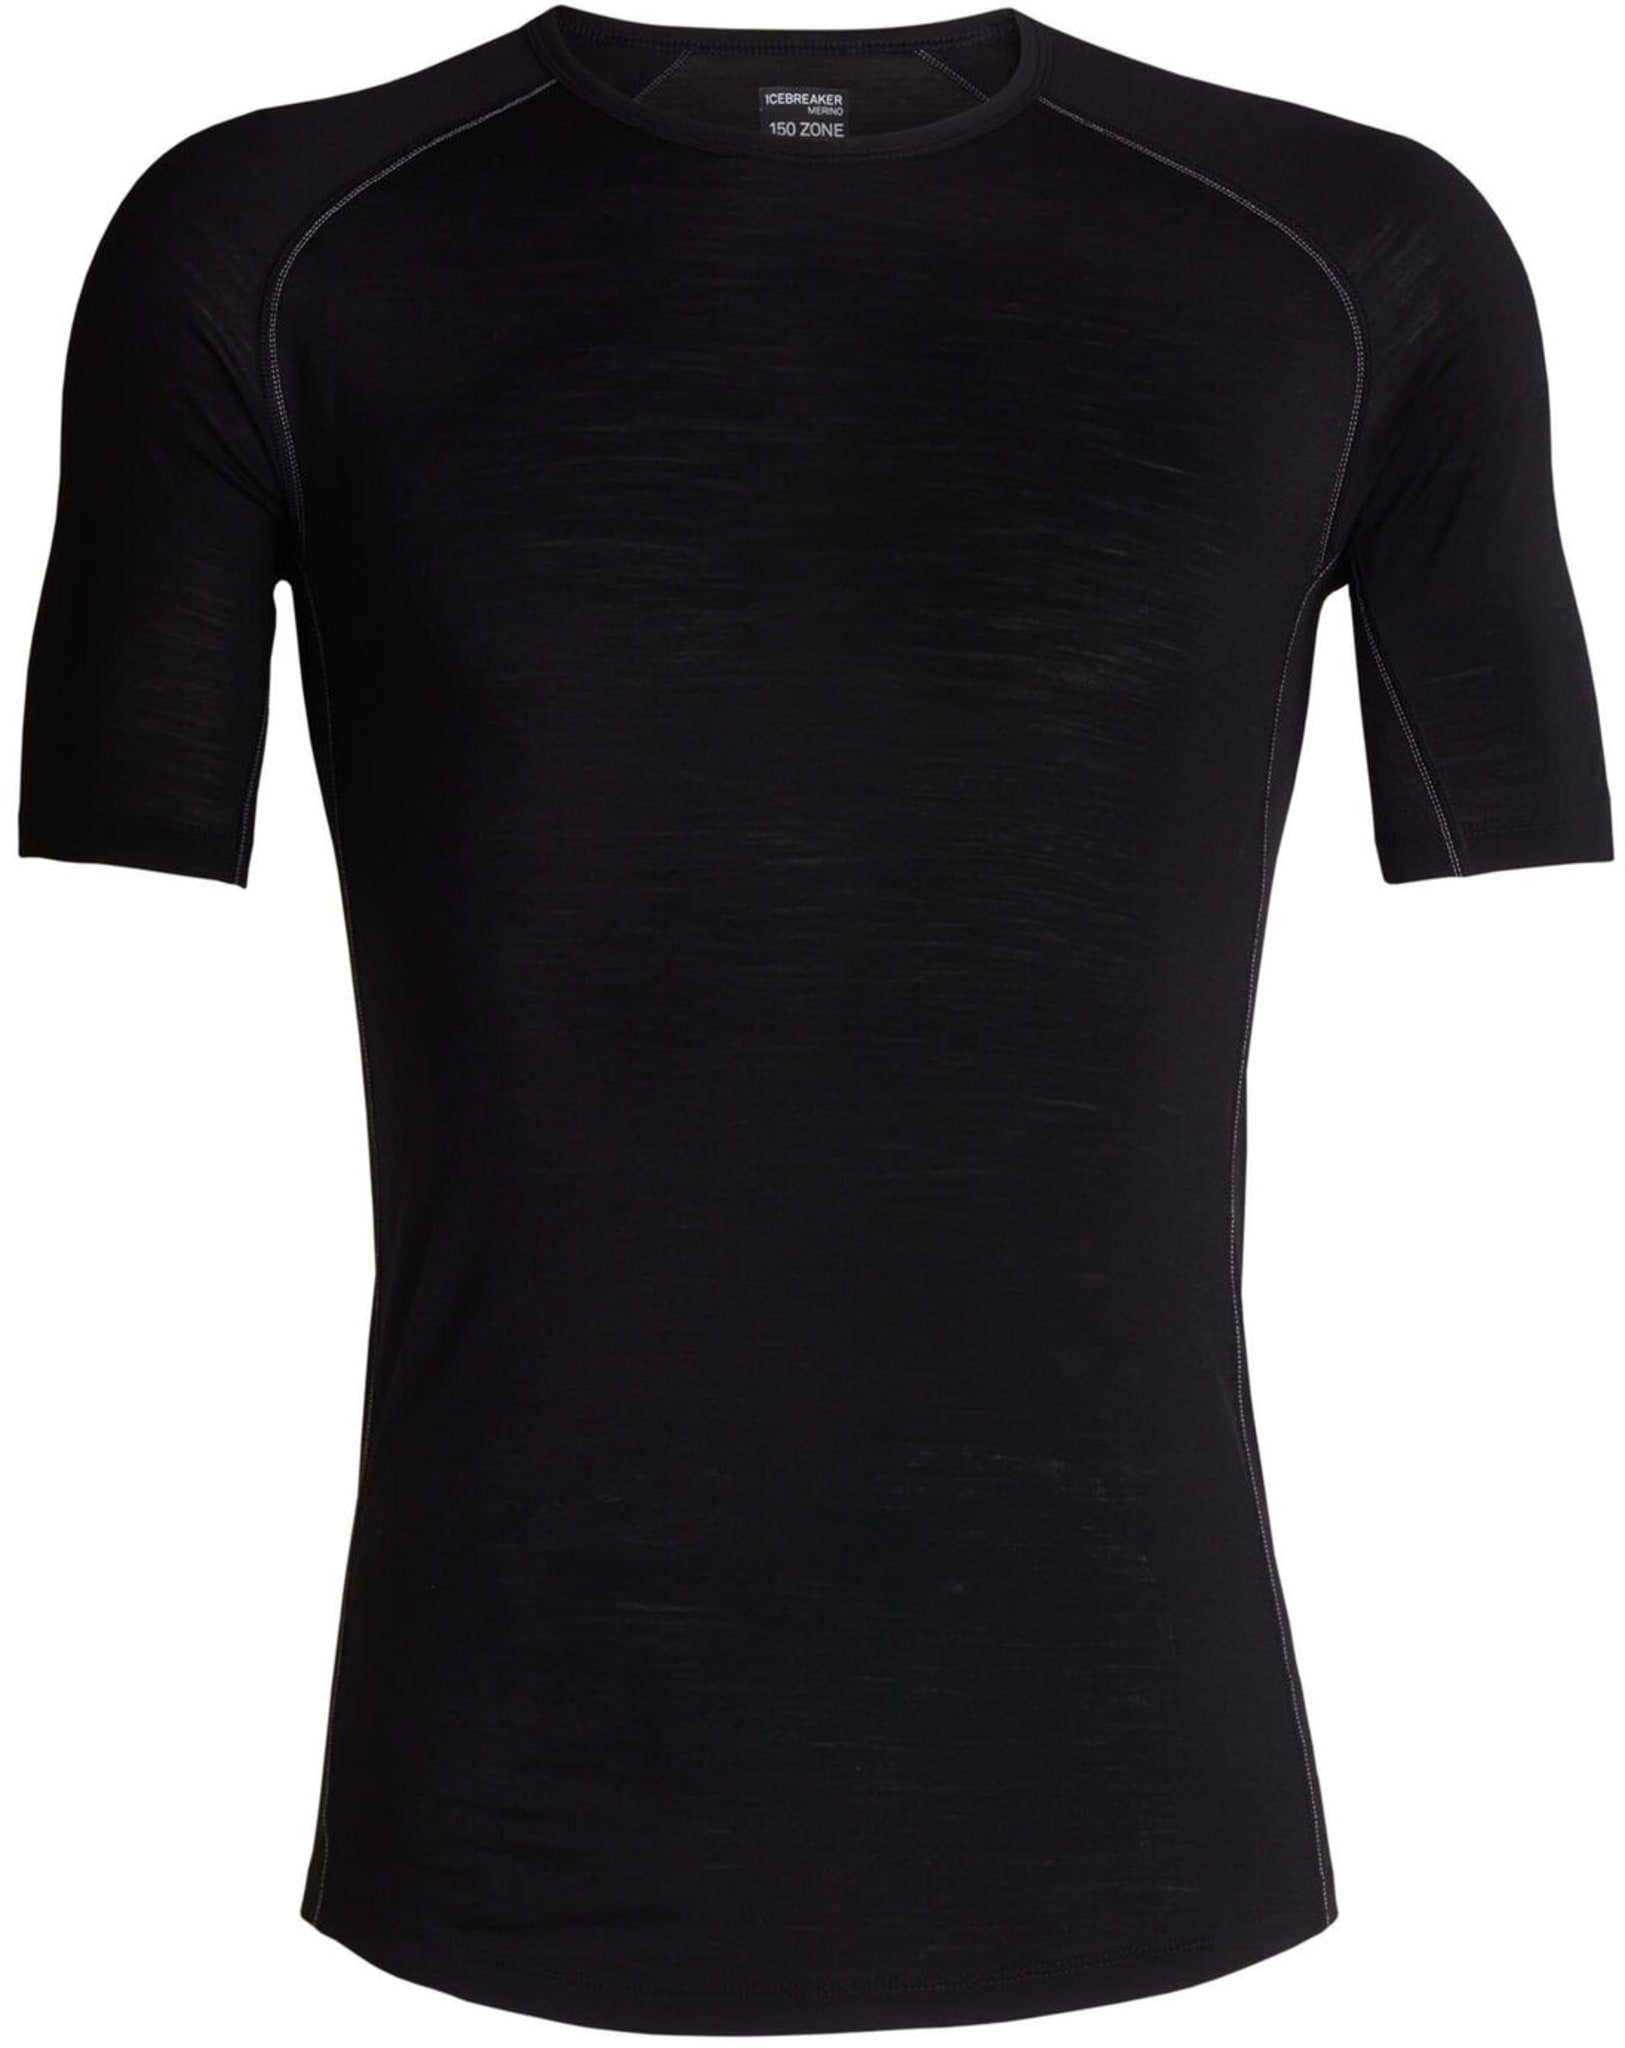 T-skjorte som kombinerer tynn ull og paneler med ullnetting på strategiske steder som under armene.